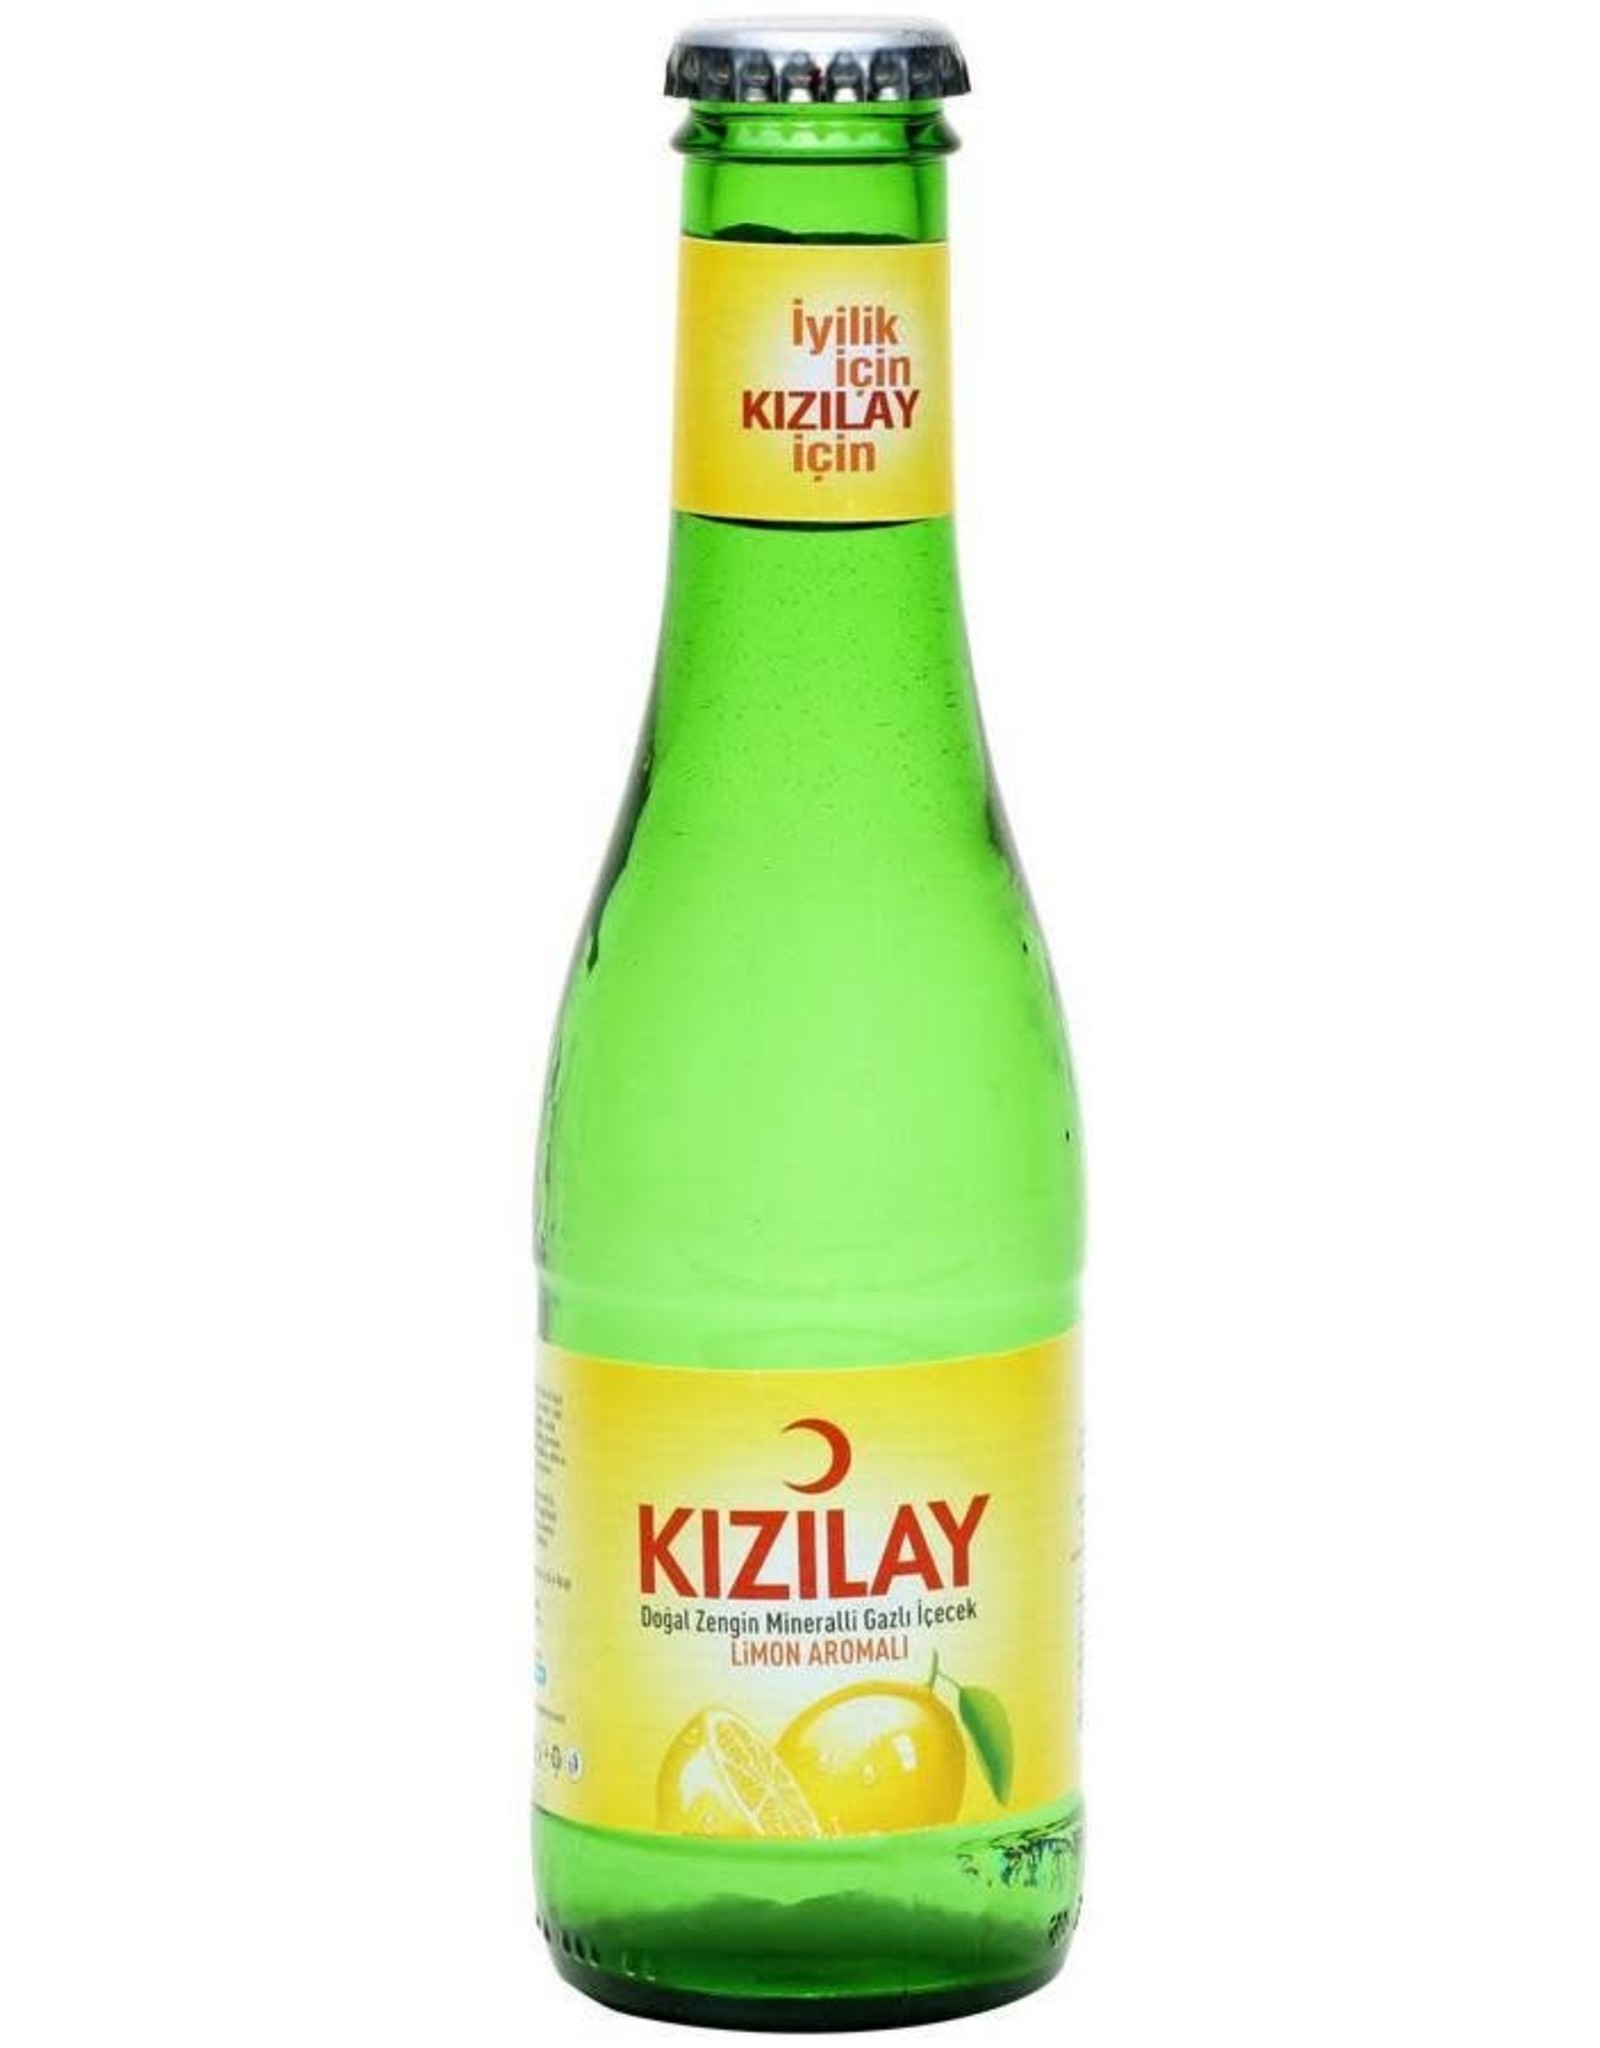 Kizilay KIZILAY LIMON 24X25ML